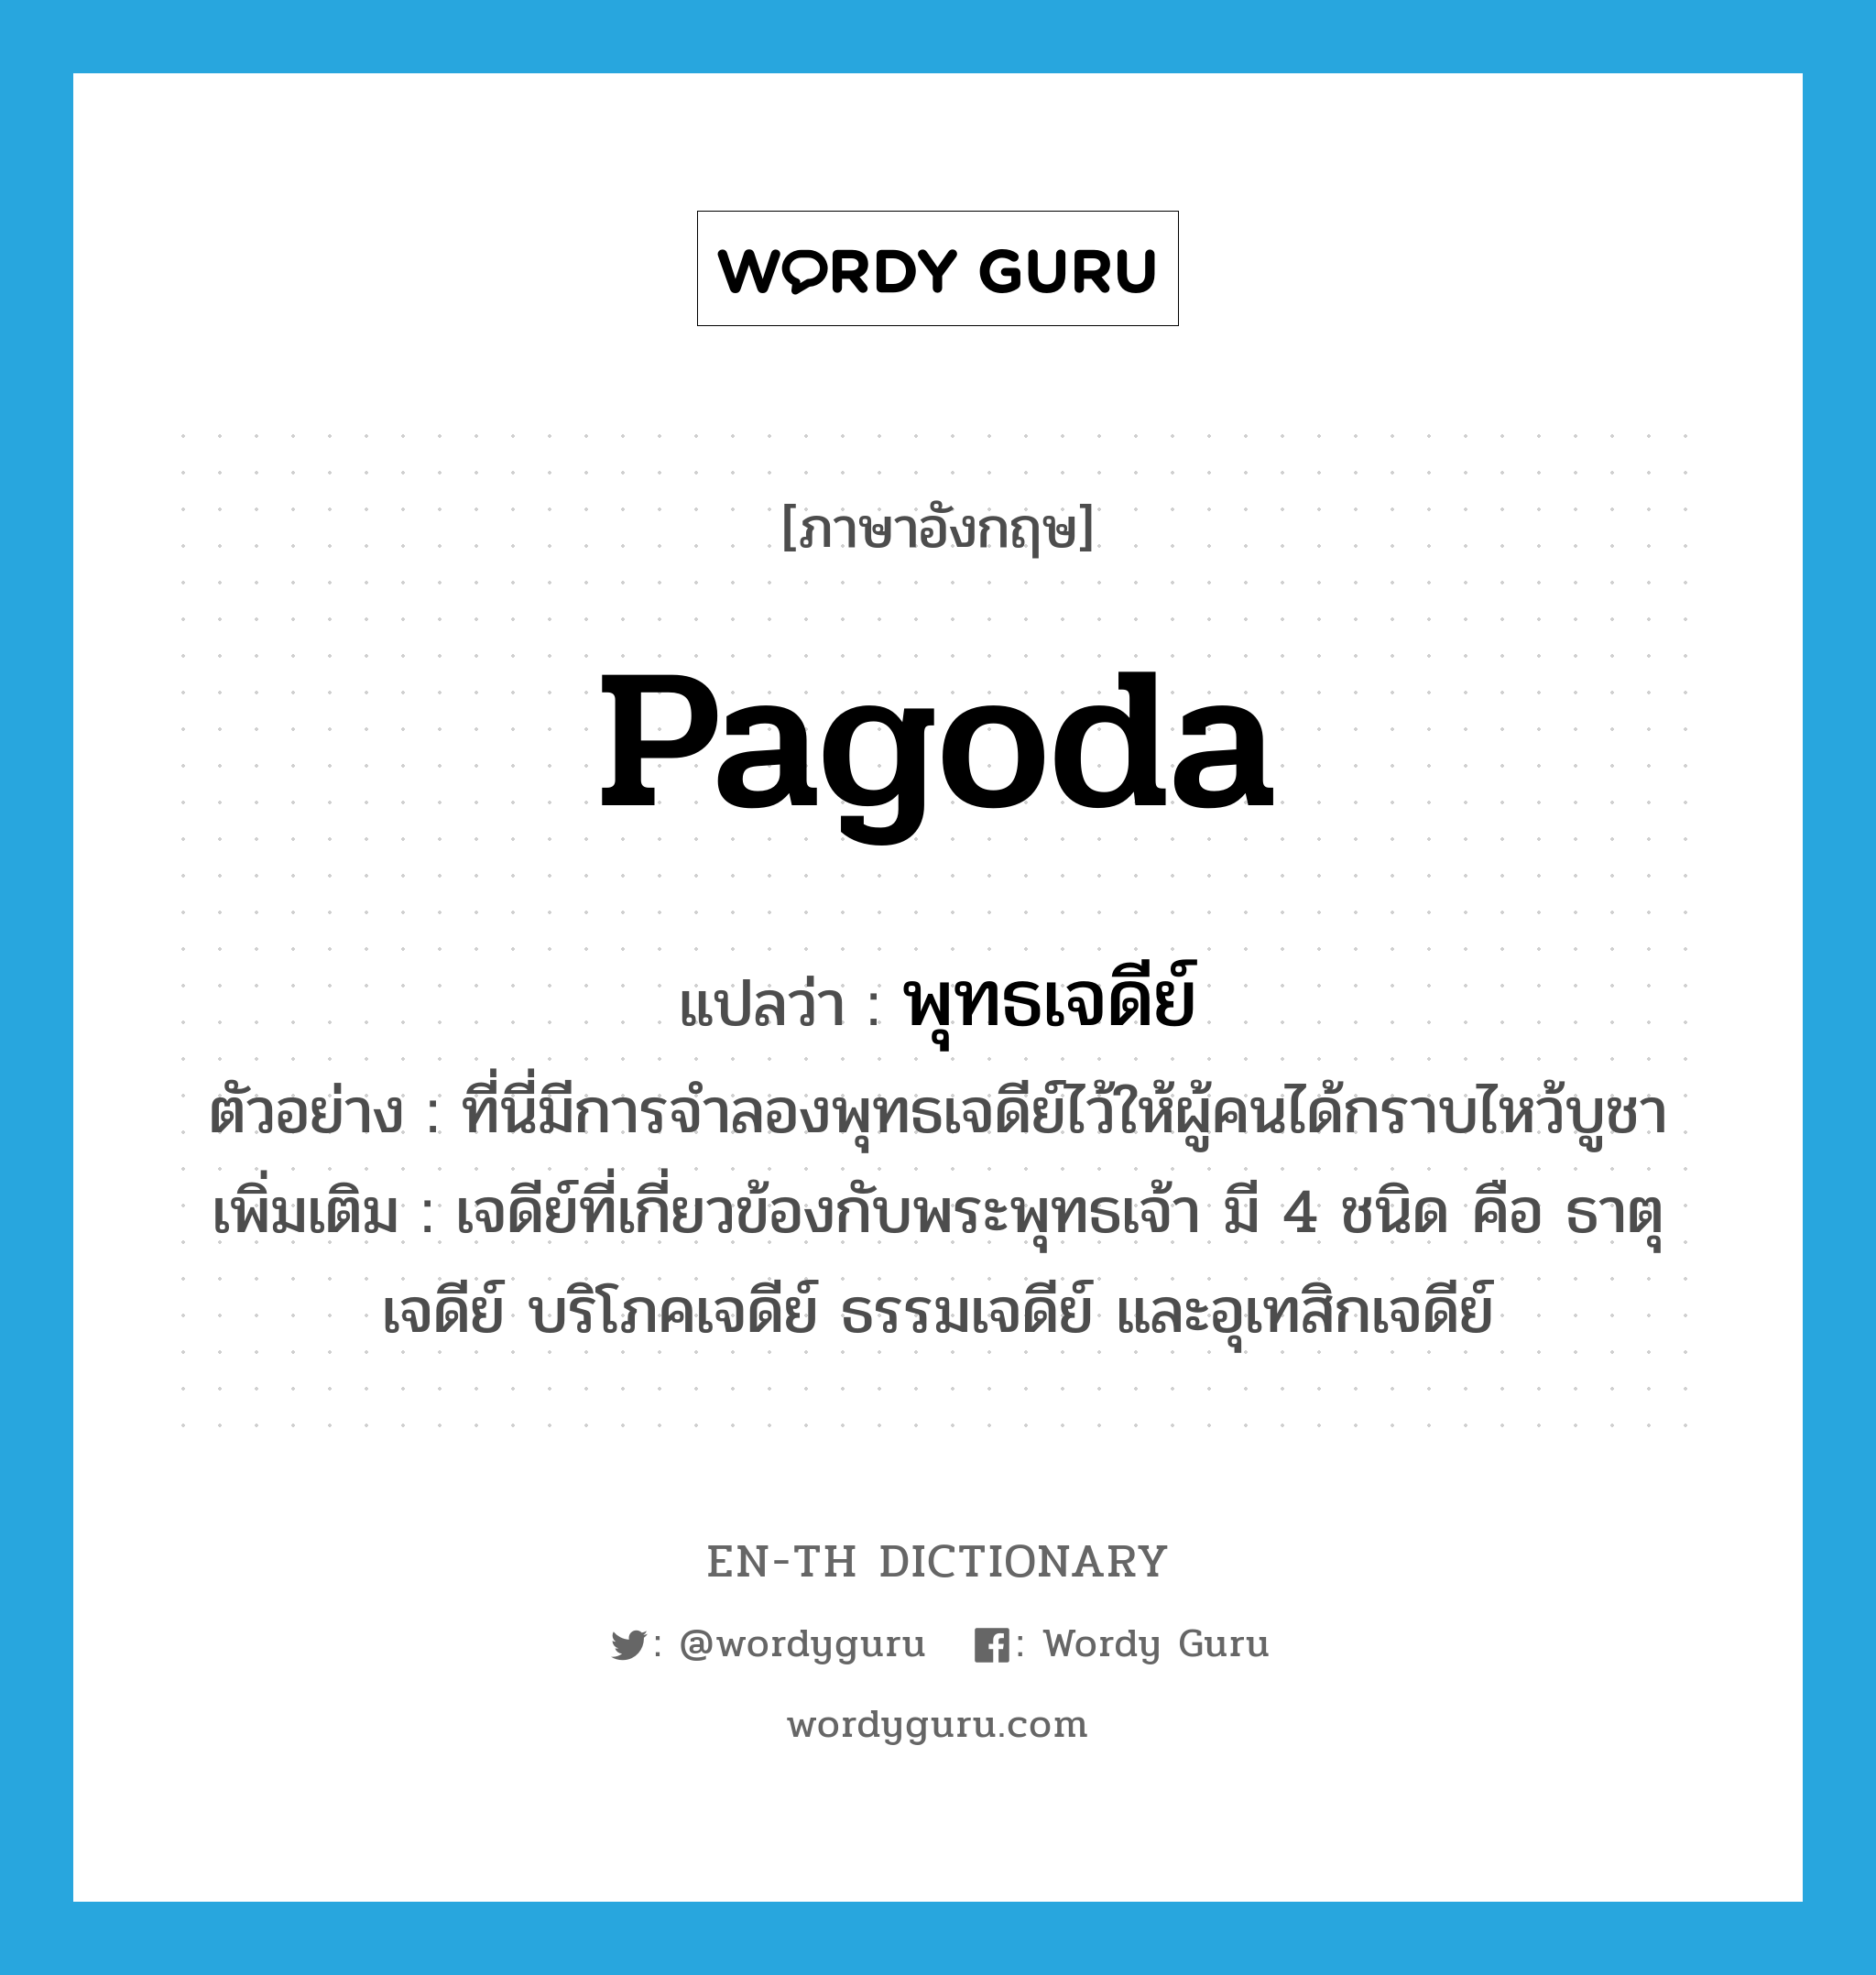 pagoda แปลว่า?, คำศัพท์ภาษาอังกฤษ pagoda แปลว่า พุทธเจดีย์ ประเภท N ตัวอย่าง ที่นี่มีการจำลองพุทธเจดีย์ไว้ให้ผู้คนได้กราบไหว้บูชา เพิ่มเติม เจดีย์ที่เกี่ยวข้องกับพระพุทธเจ้า มี 4 ชนิด คือ ธาตุเจดีย์ บริโภคเจดีย์ ธรรมเจดีย์ และอุเทสิกเจดีย์ หมวด N